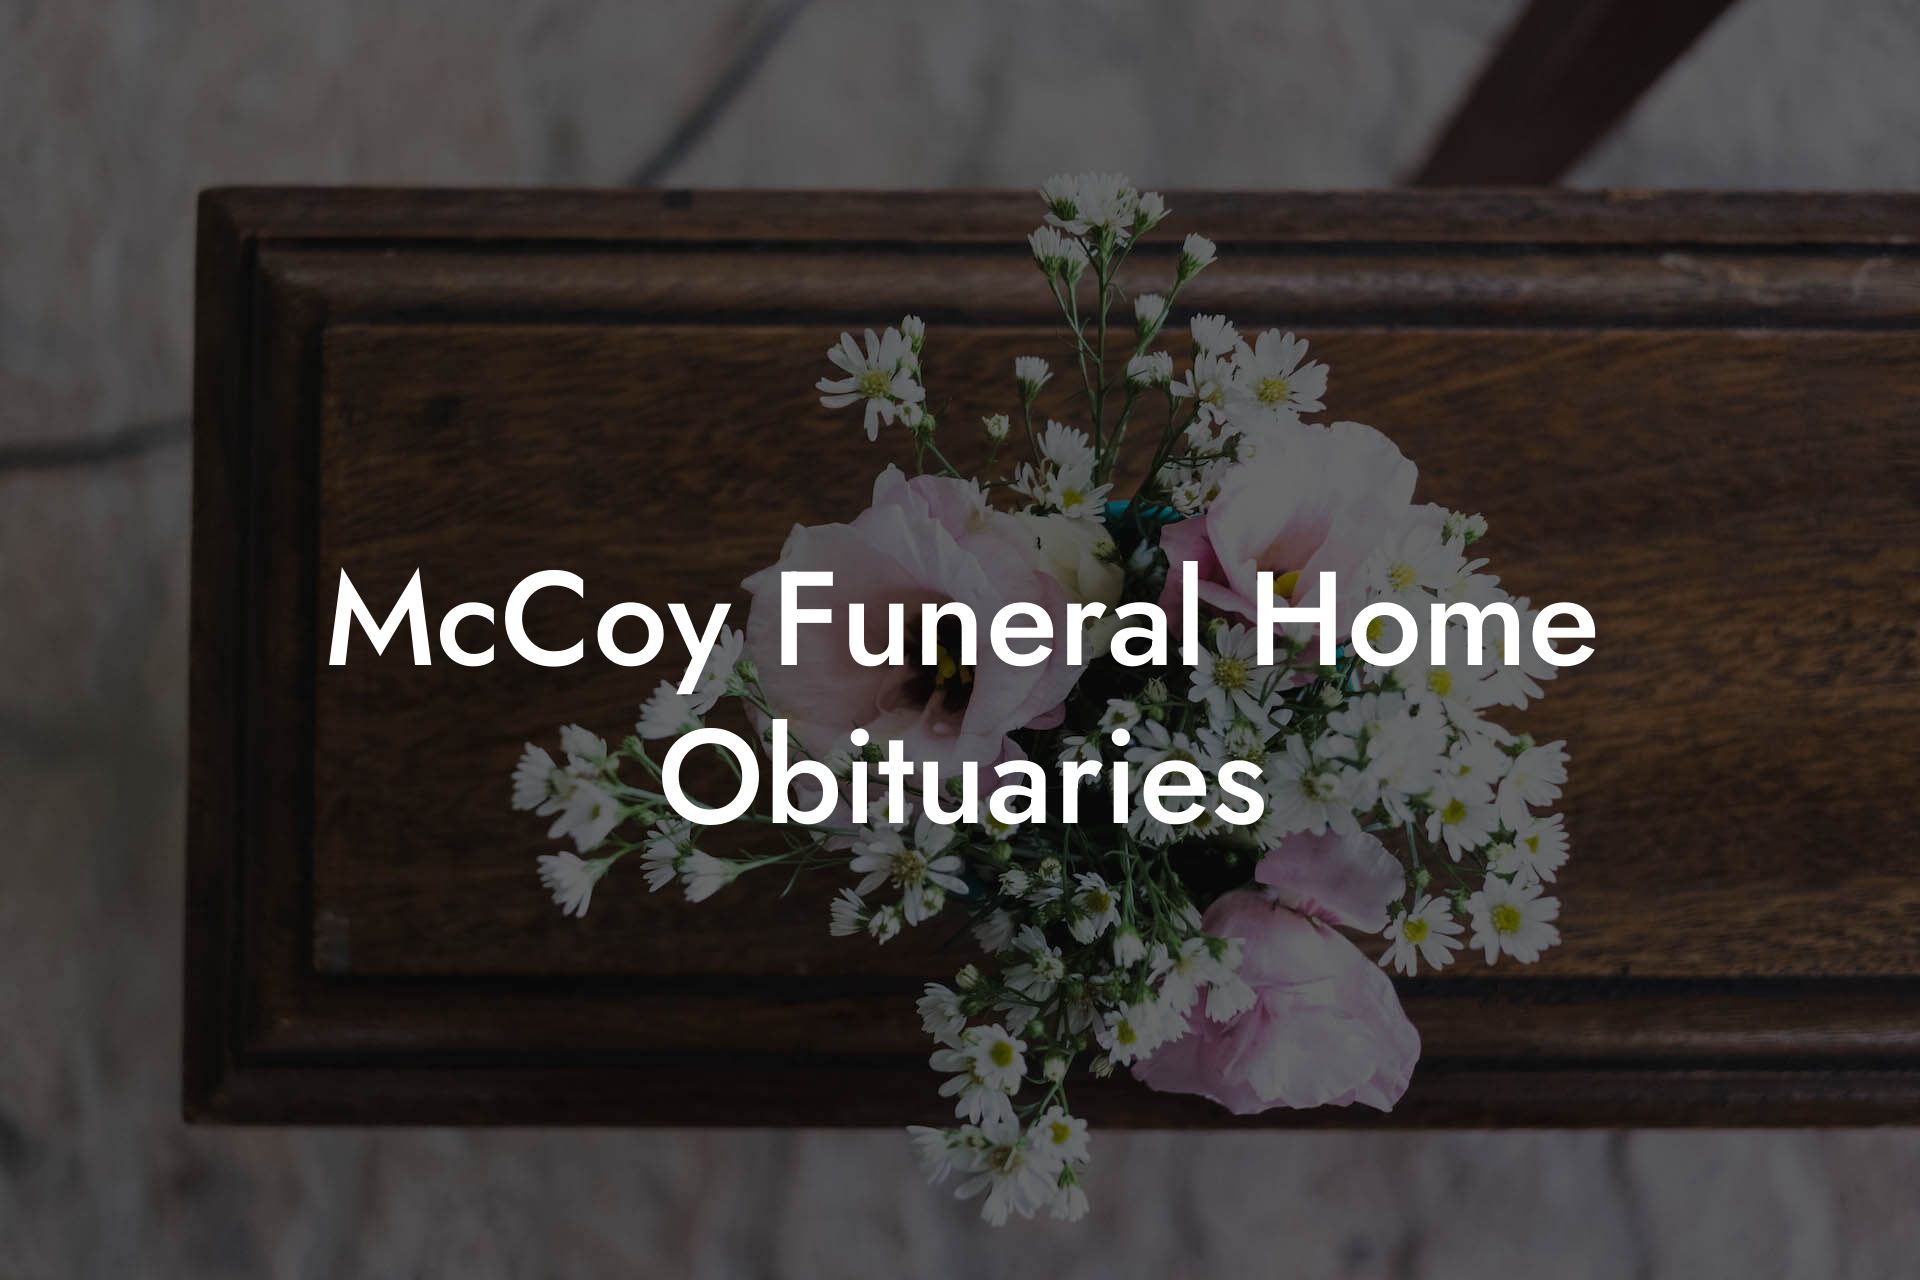 McCoy Funeral Home Obituaries